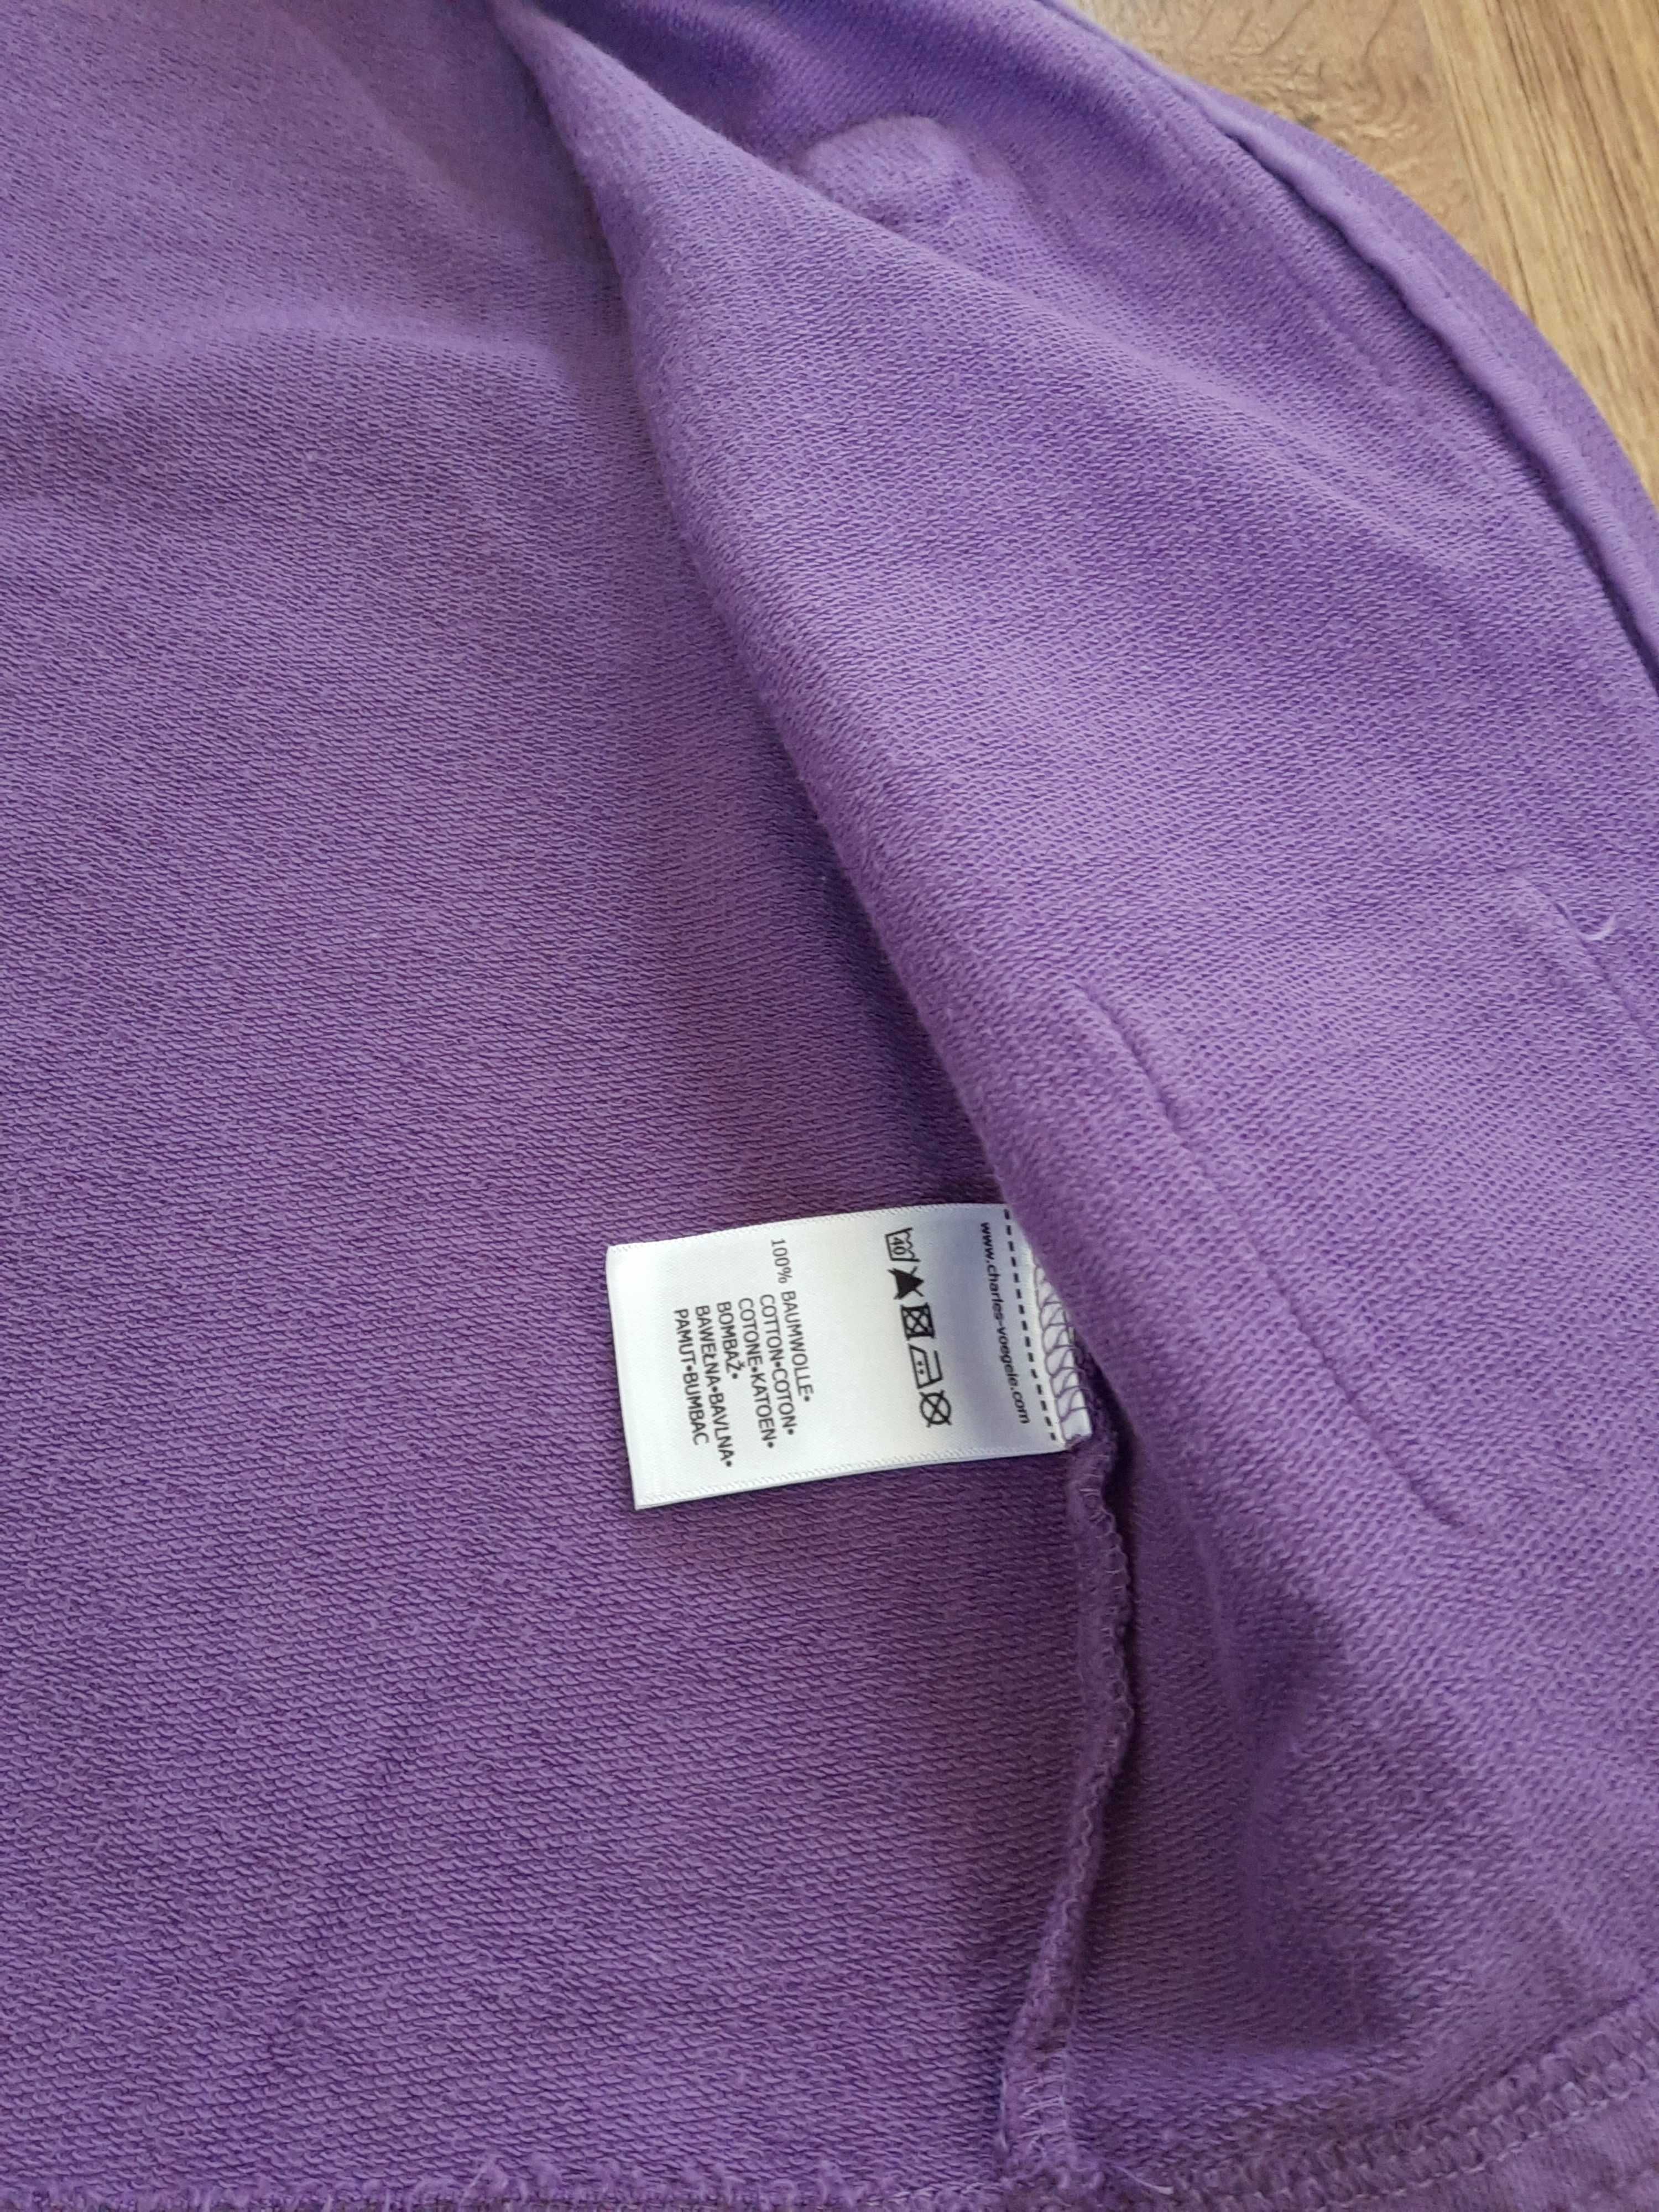 Bluza  elegancka bolerko 100% bawełna rozmiar 116